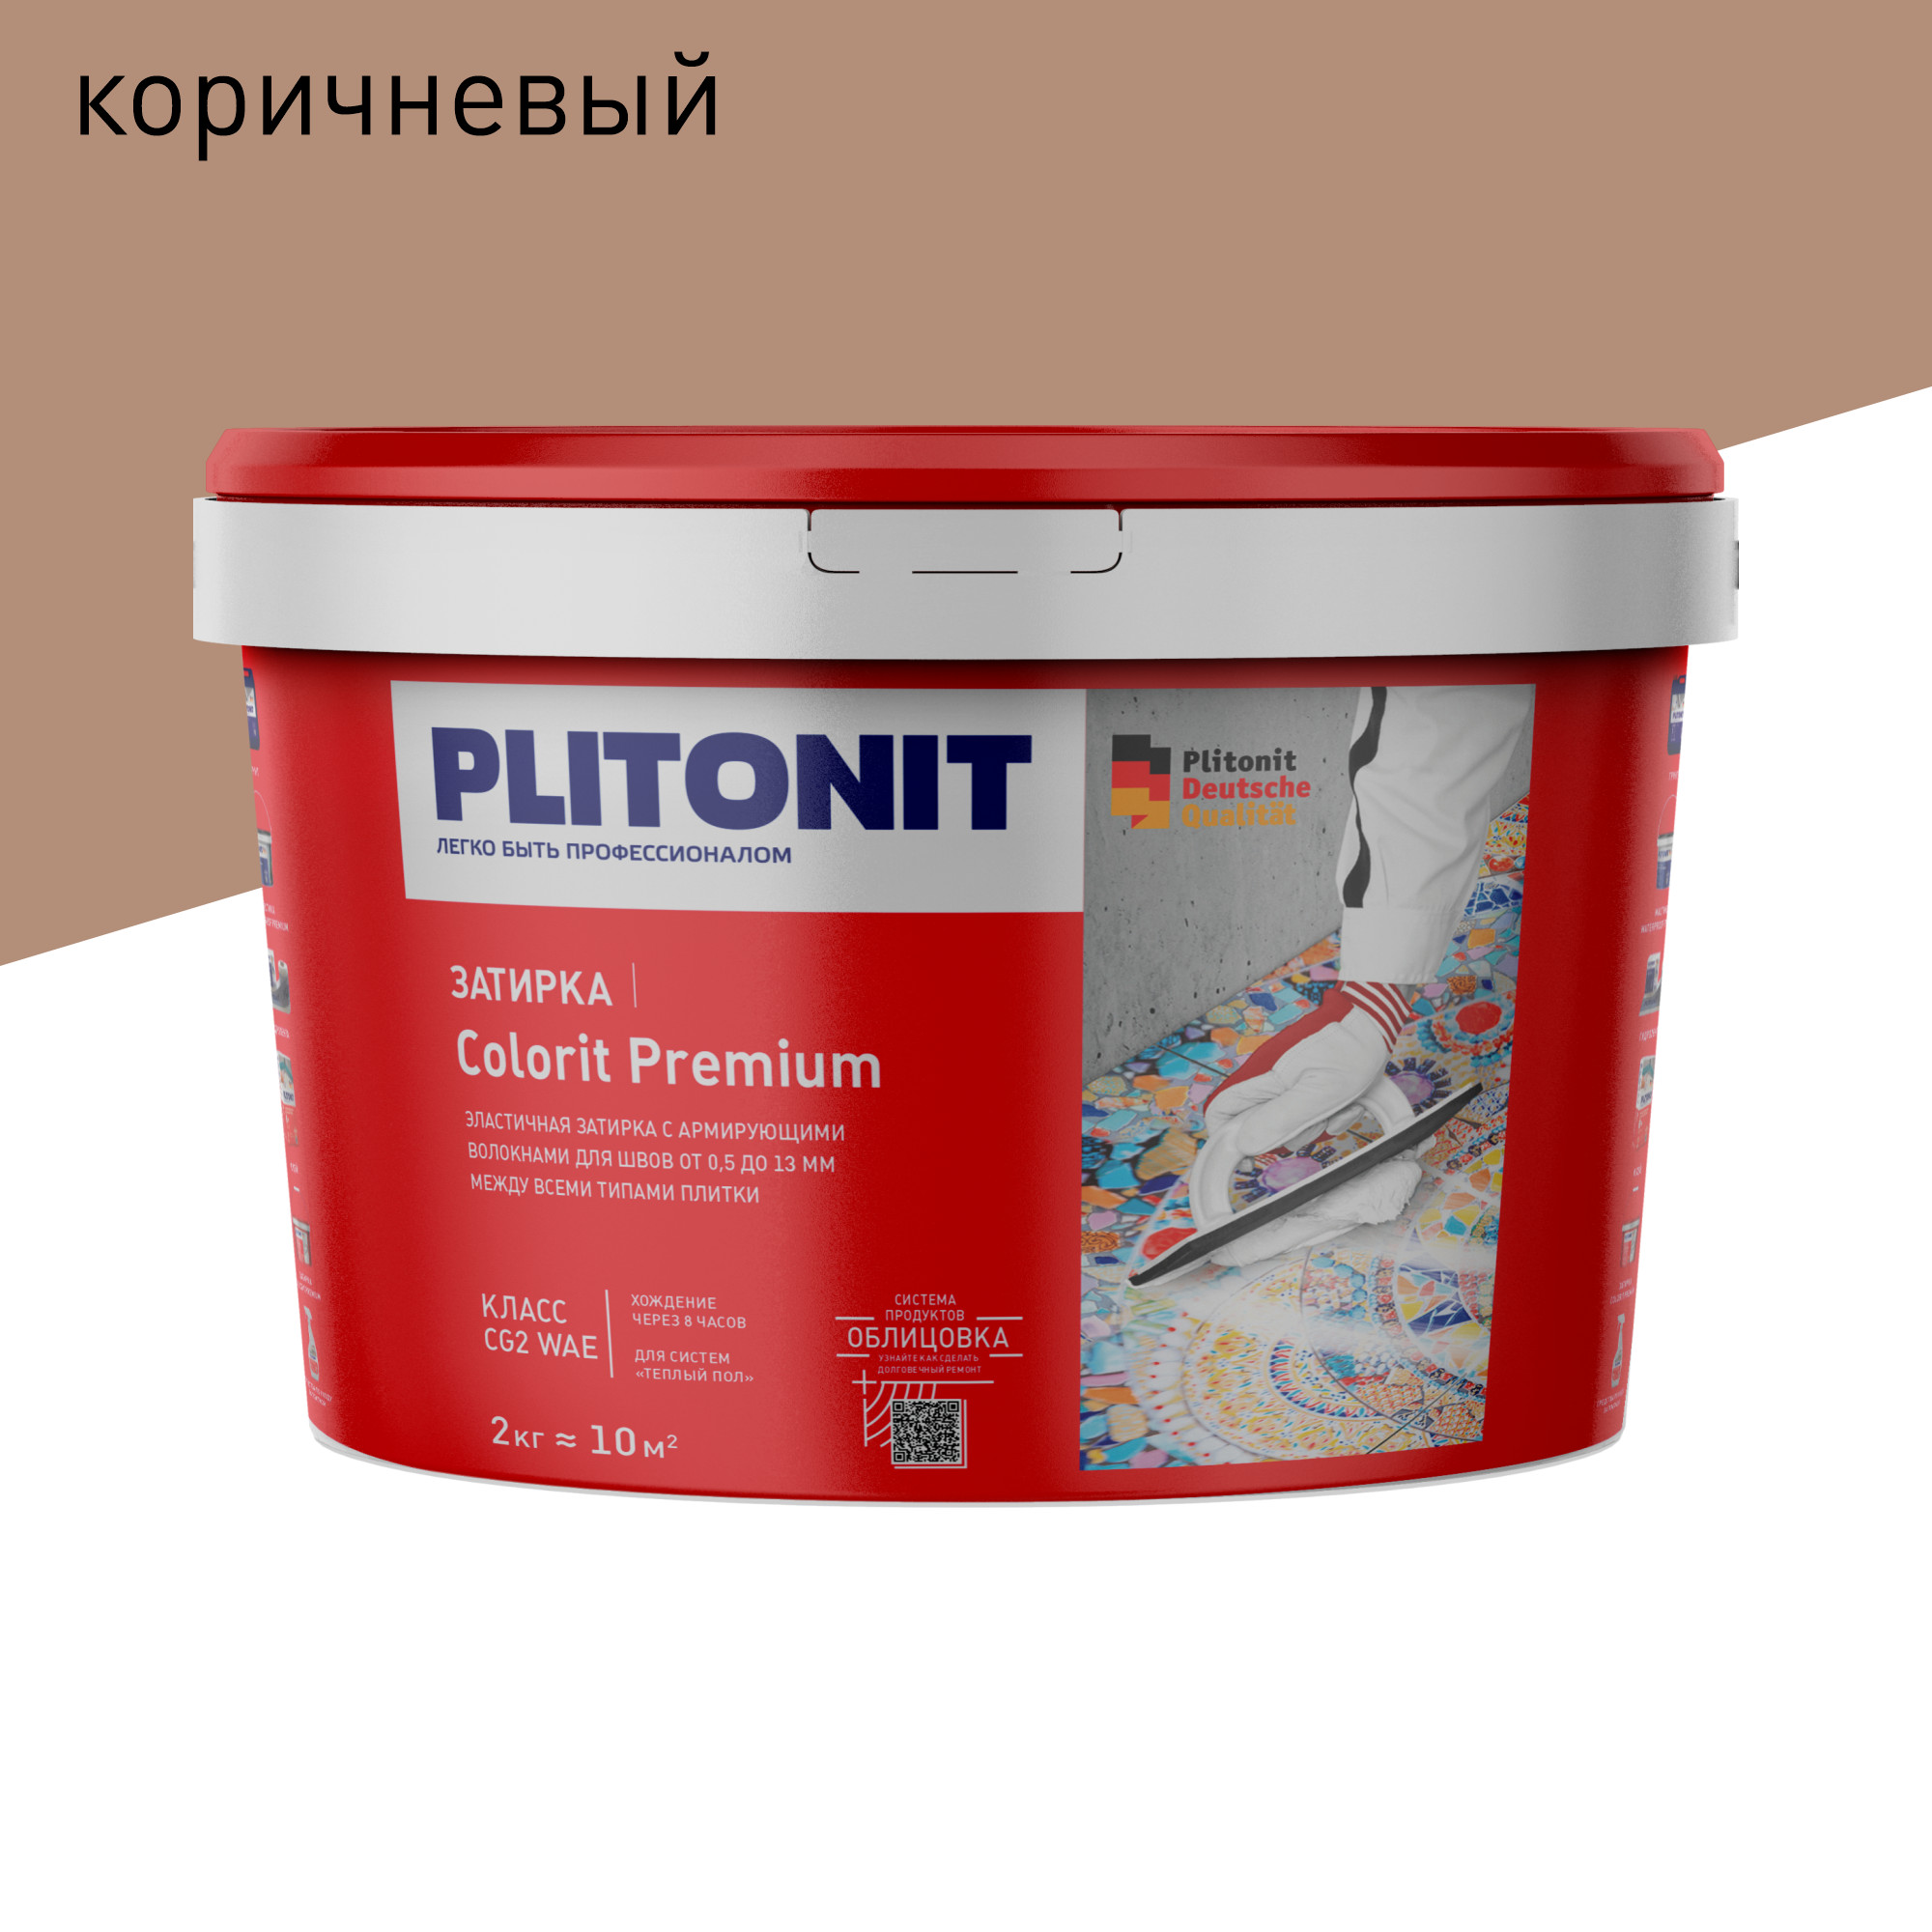 Затирка PLITONIT Colorit Premium коричневая 2 кг затирка эпоксидная plitonit colorit easyfill бежевая 2 кг